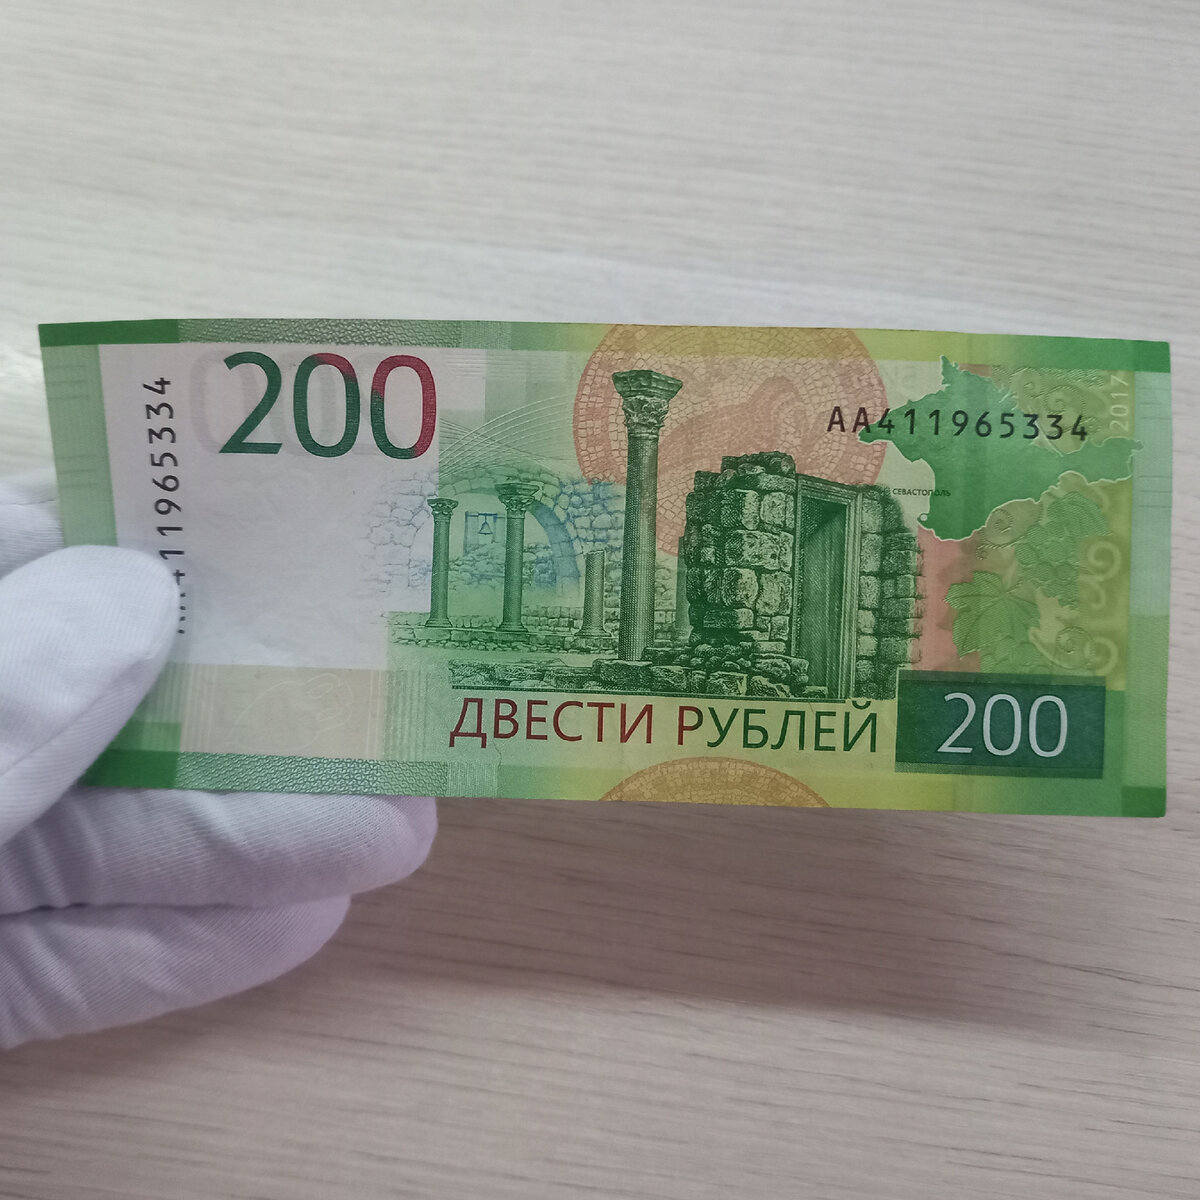 Код 200 рублей. 200 Рублей банкнота. 200 Рублей бумажные. 200 Руб новые. Новая 200 рублевая купюра.